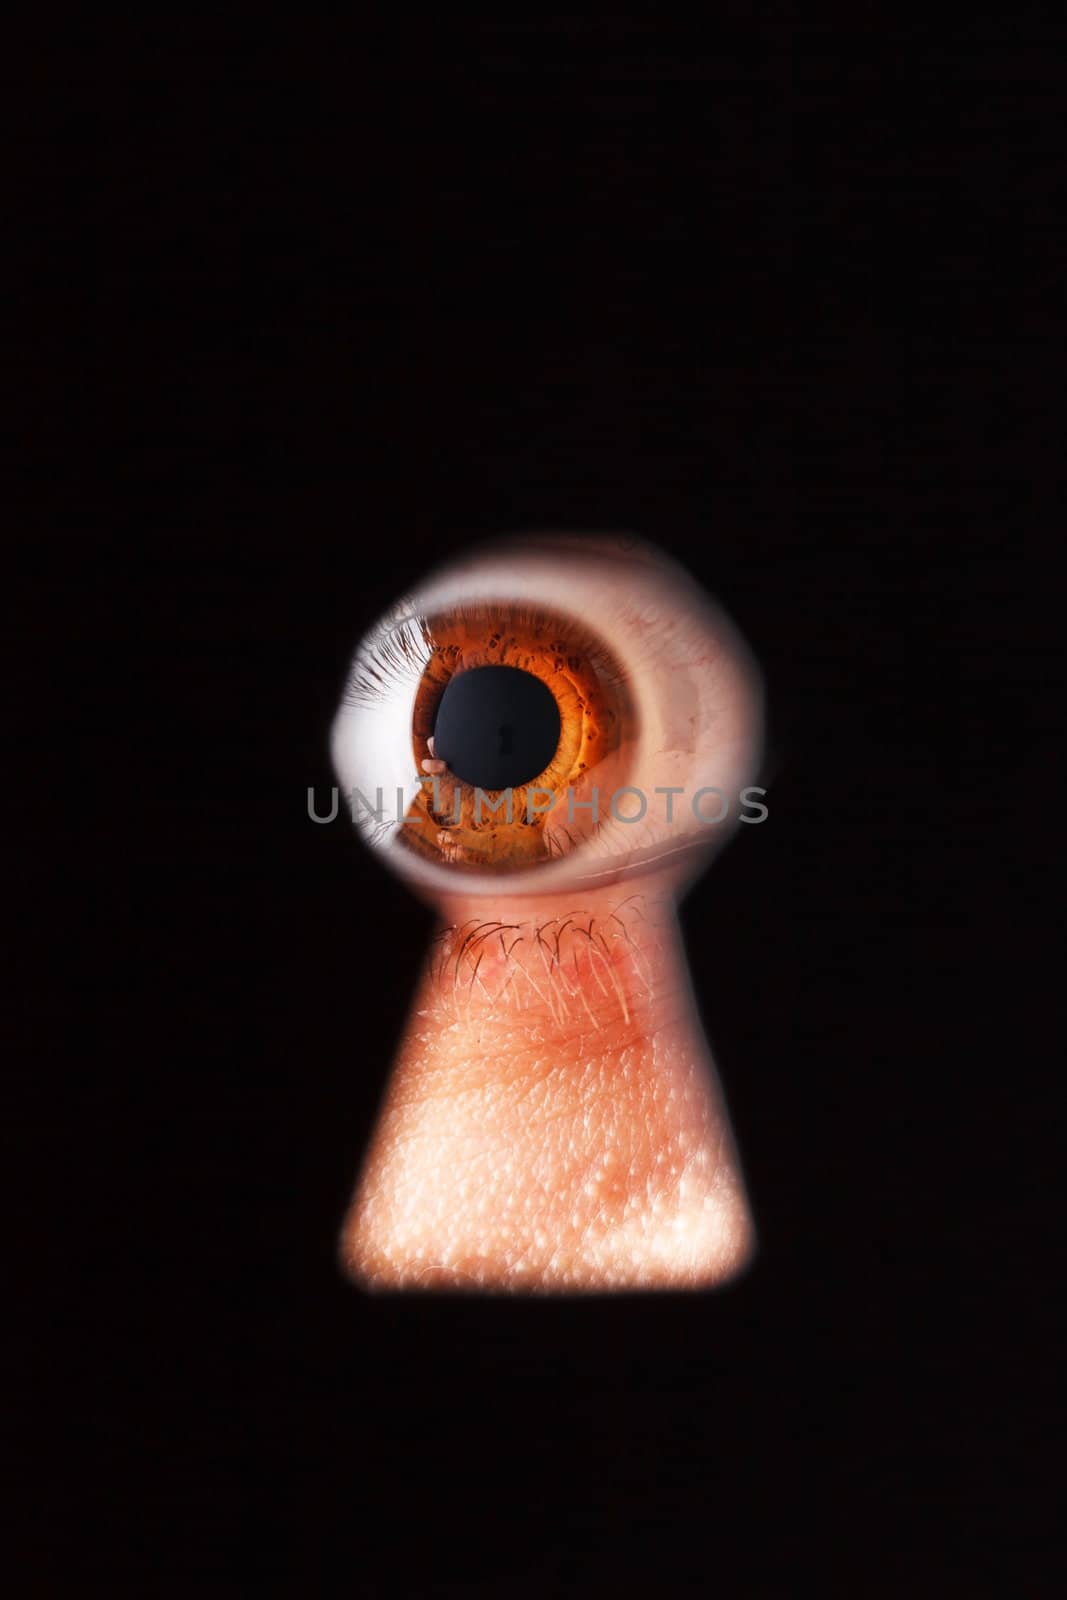 Eye looking through a keyhole